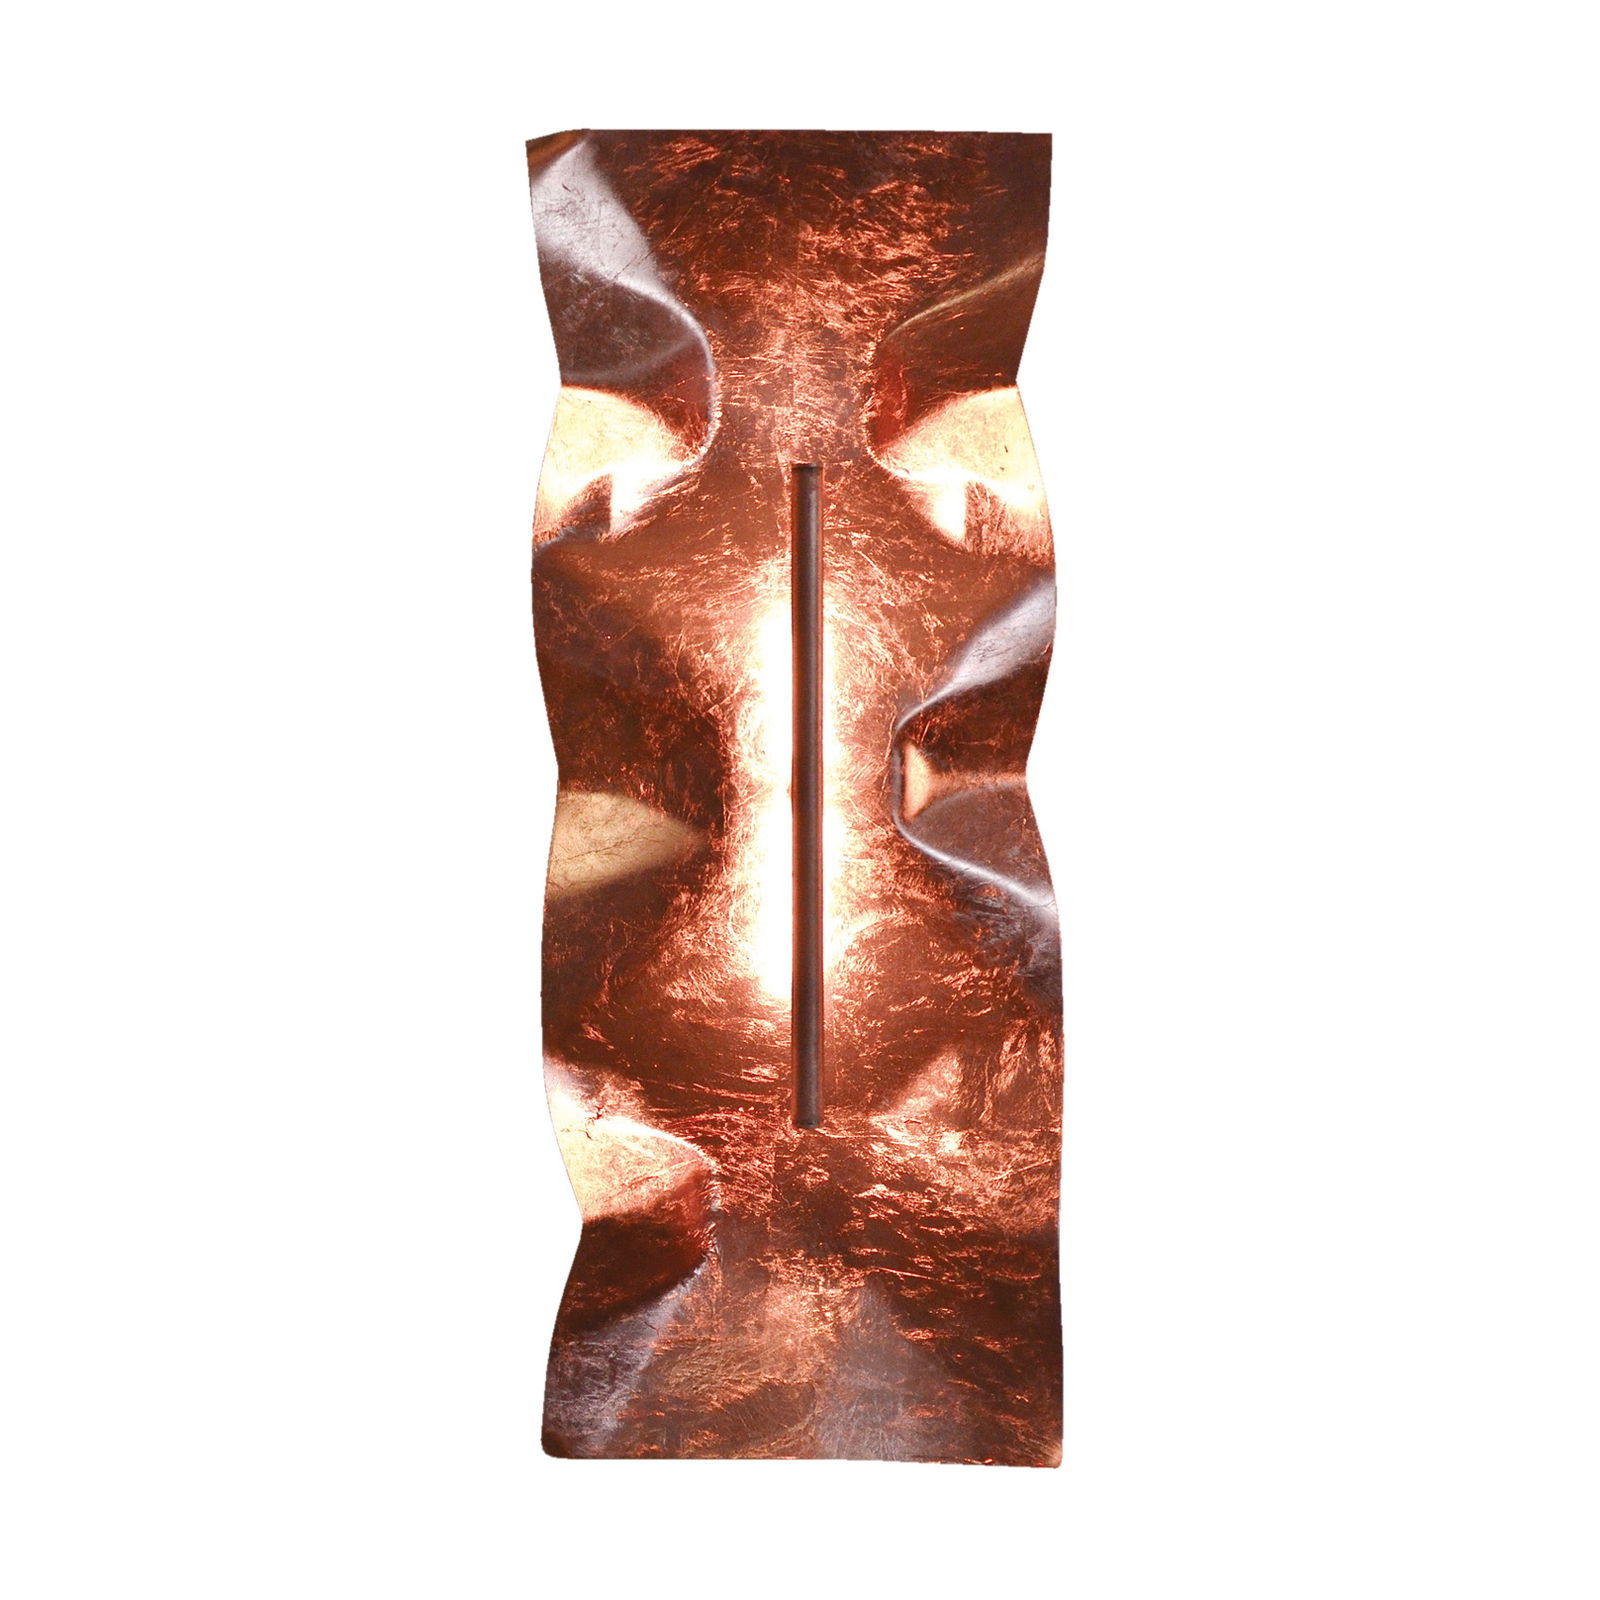 Knikerboker Crash Tube Wall, 60x25cm, folha de cobre